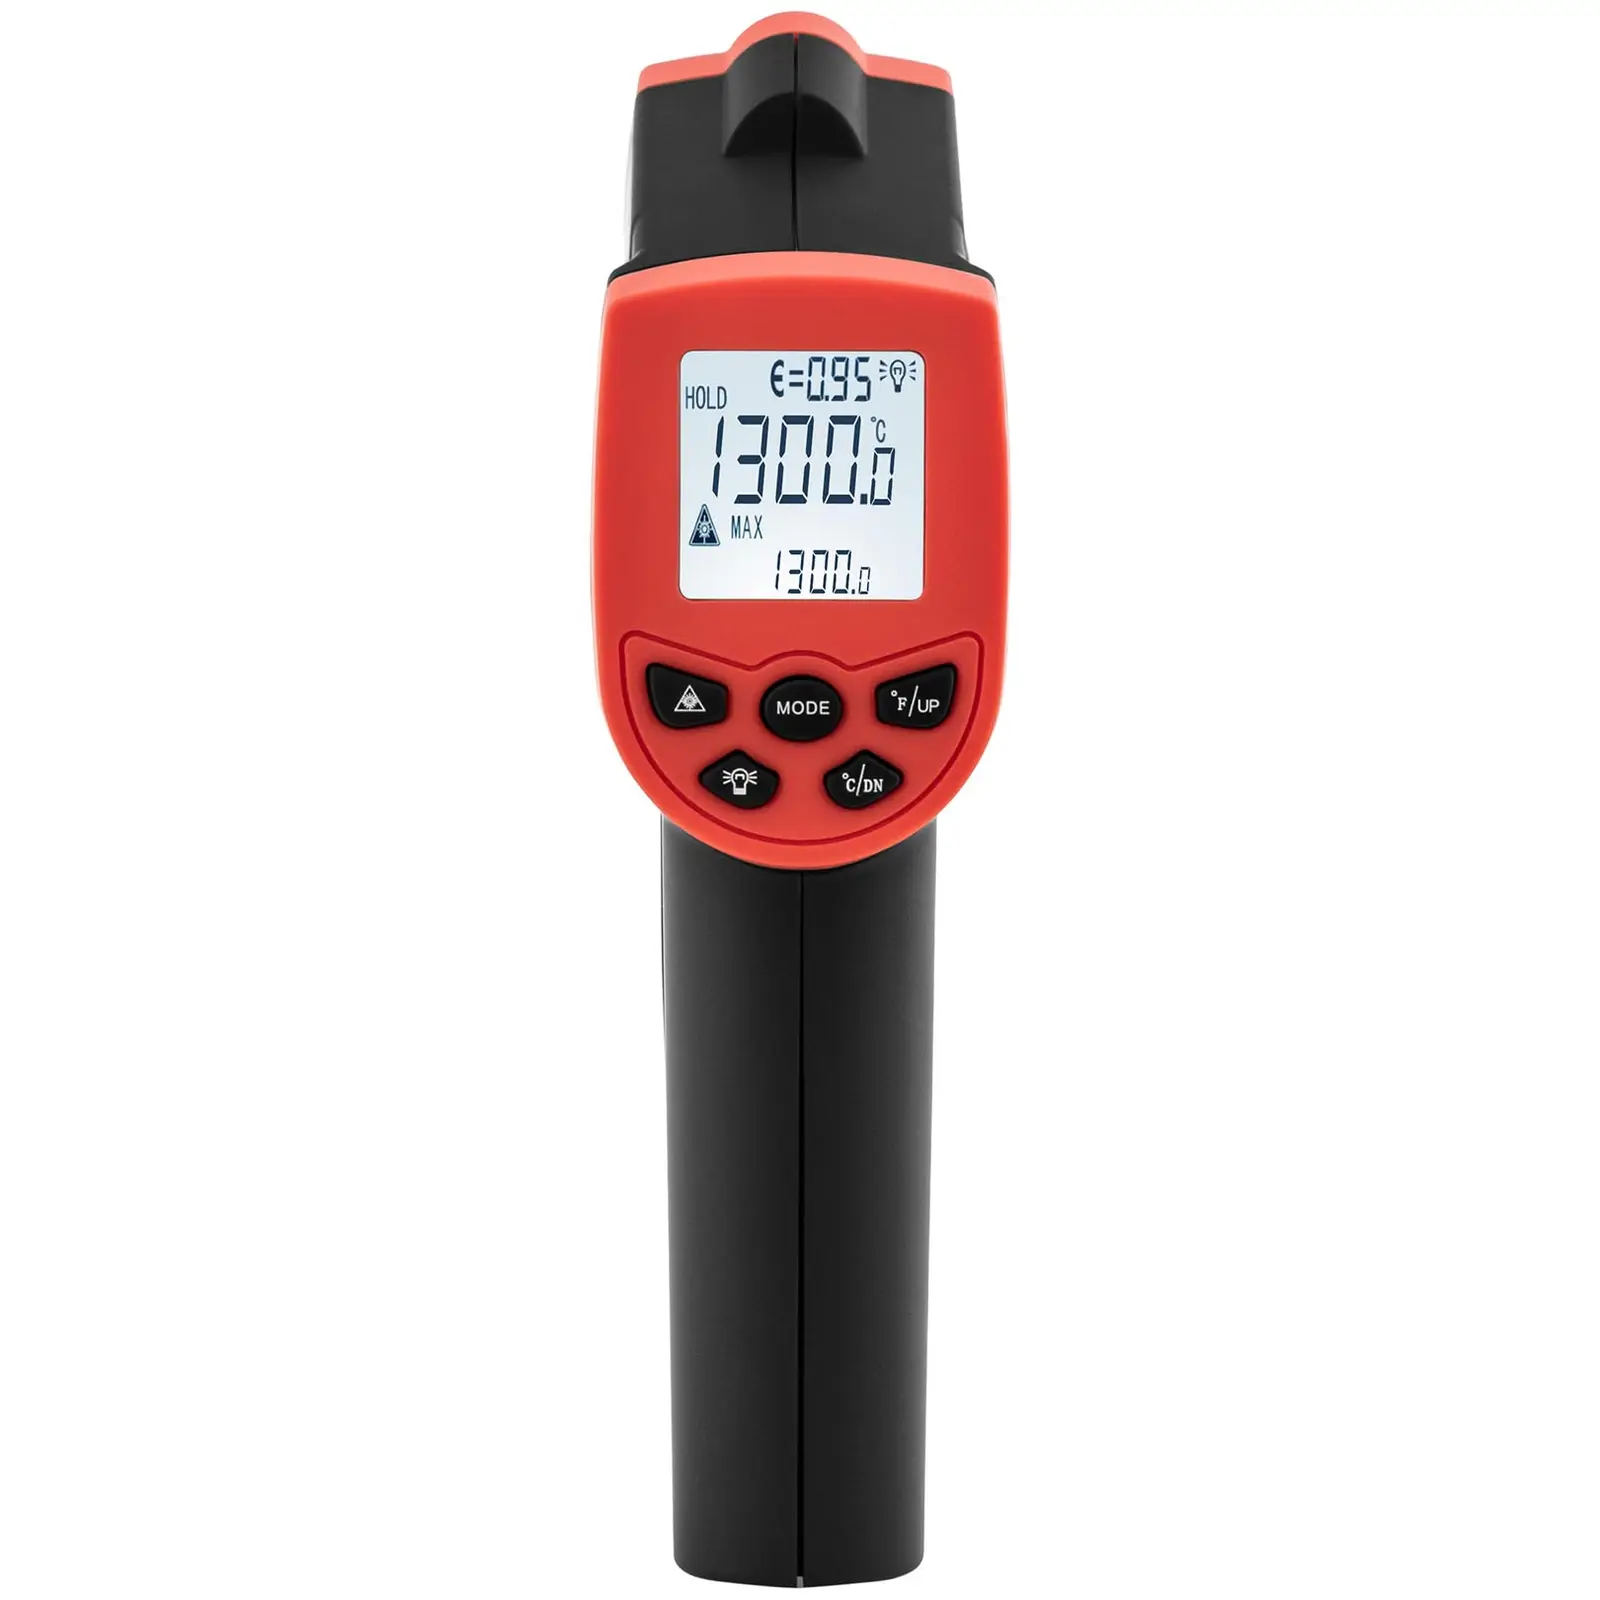 Infrarødt termometer - 50°C til 1,300 °C